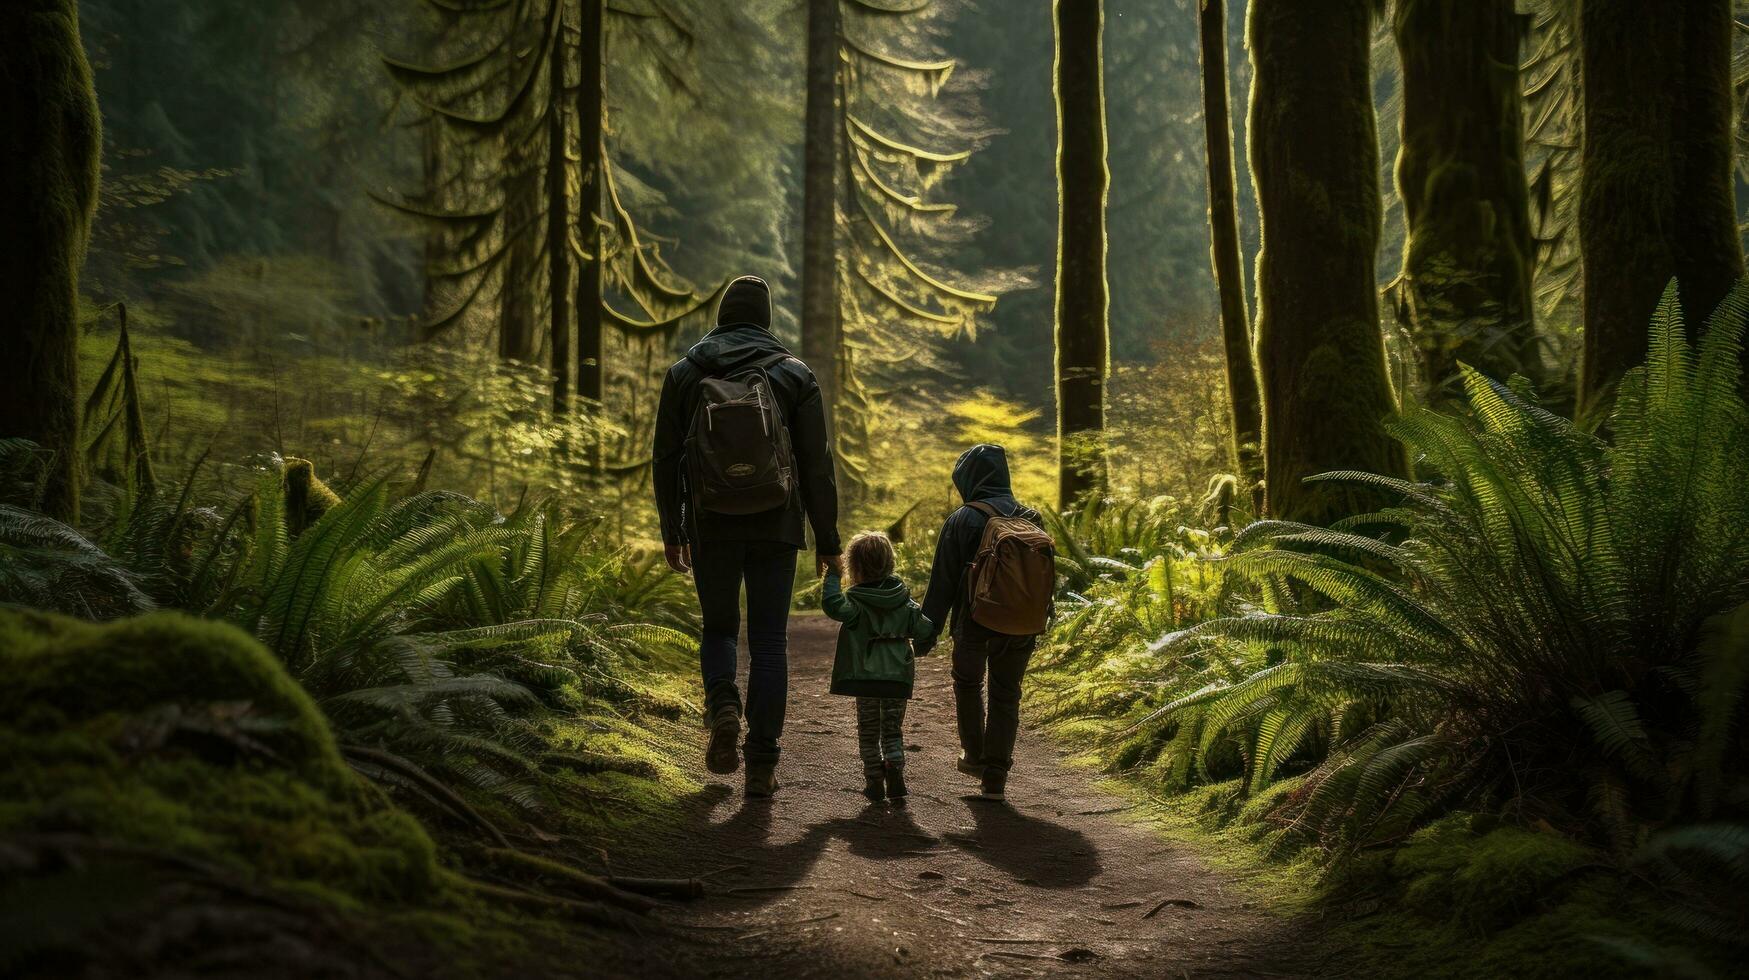 famiglia escursioni a piedi attraverso lussureggiante foresta foto